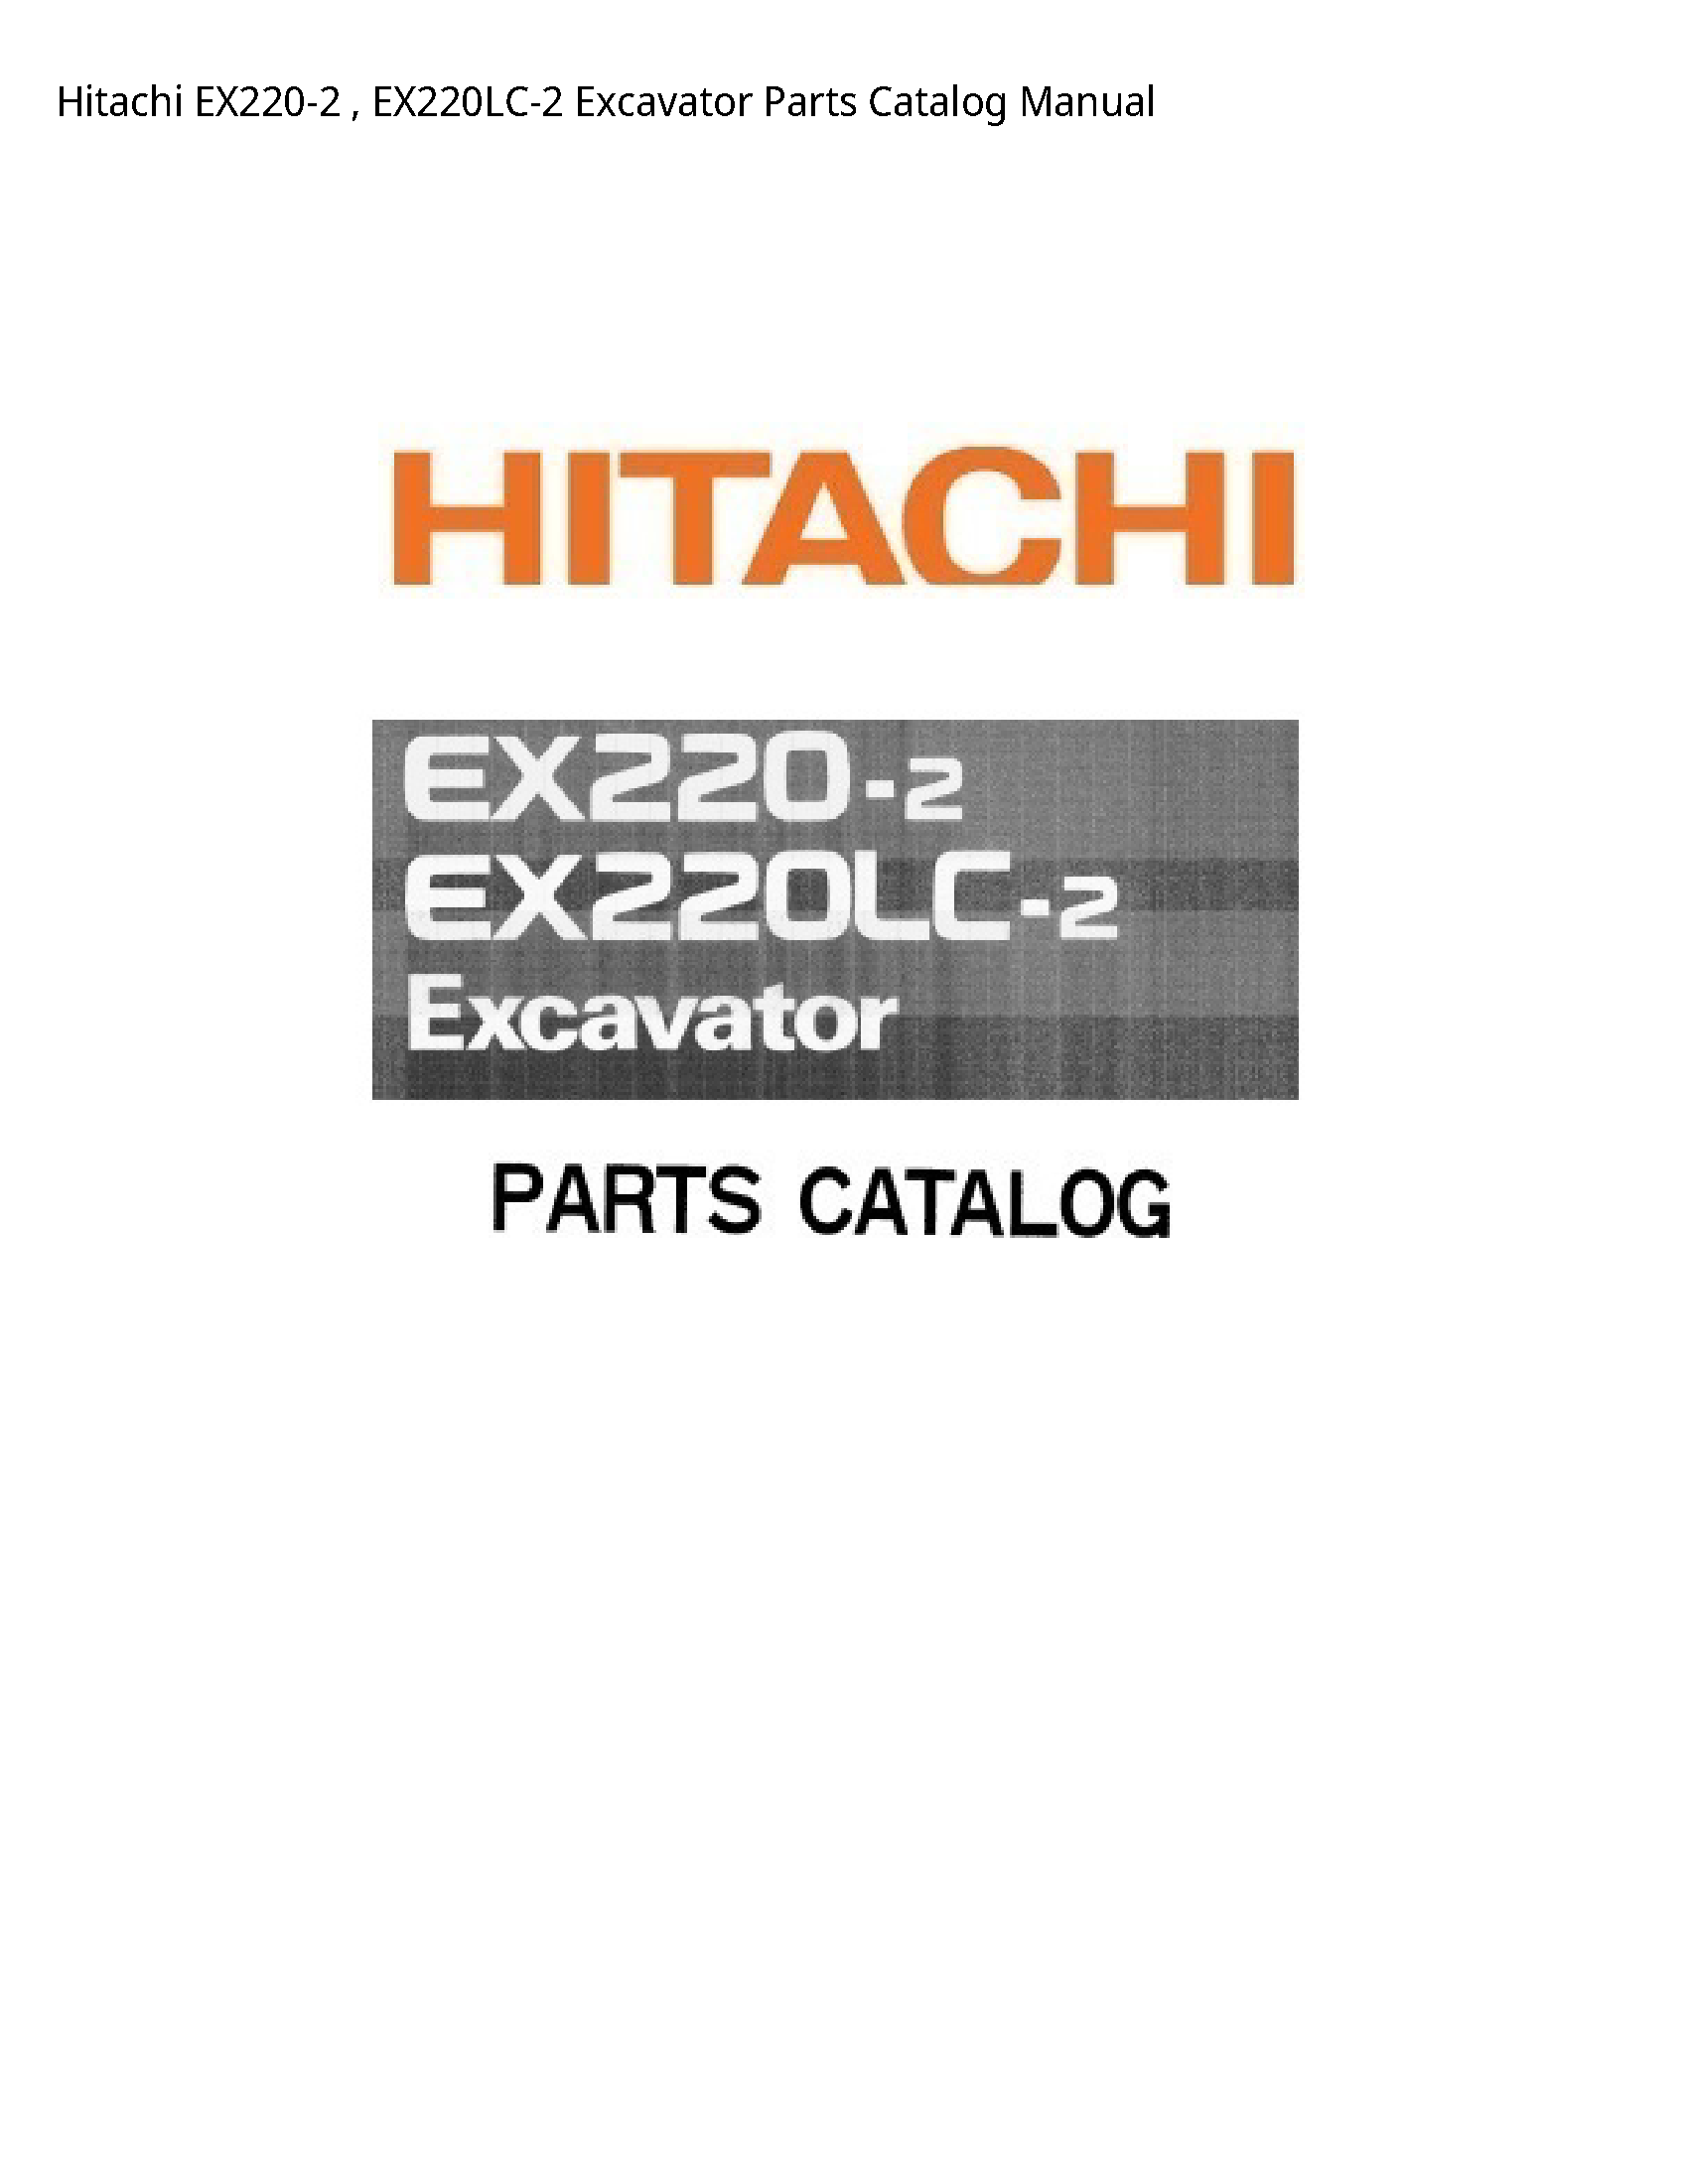 Hitachi EX220-2 Excavator Parts Catalog manual